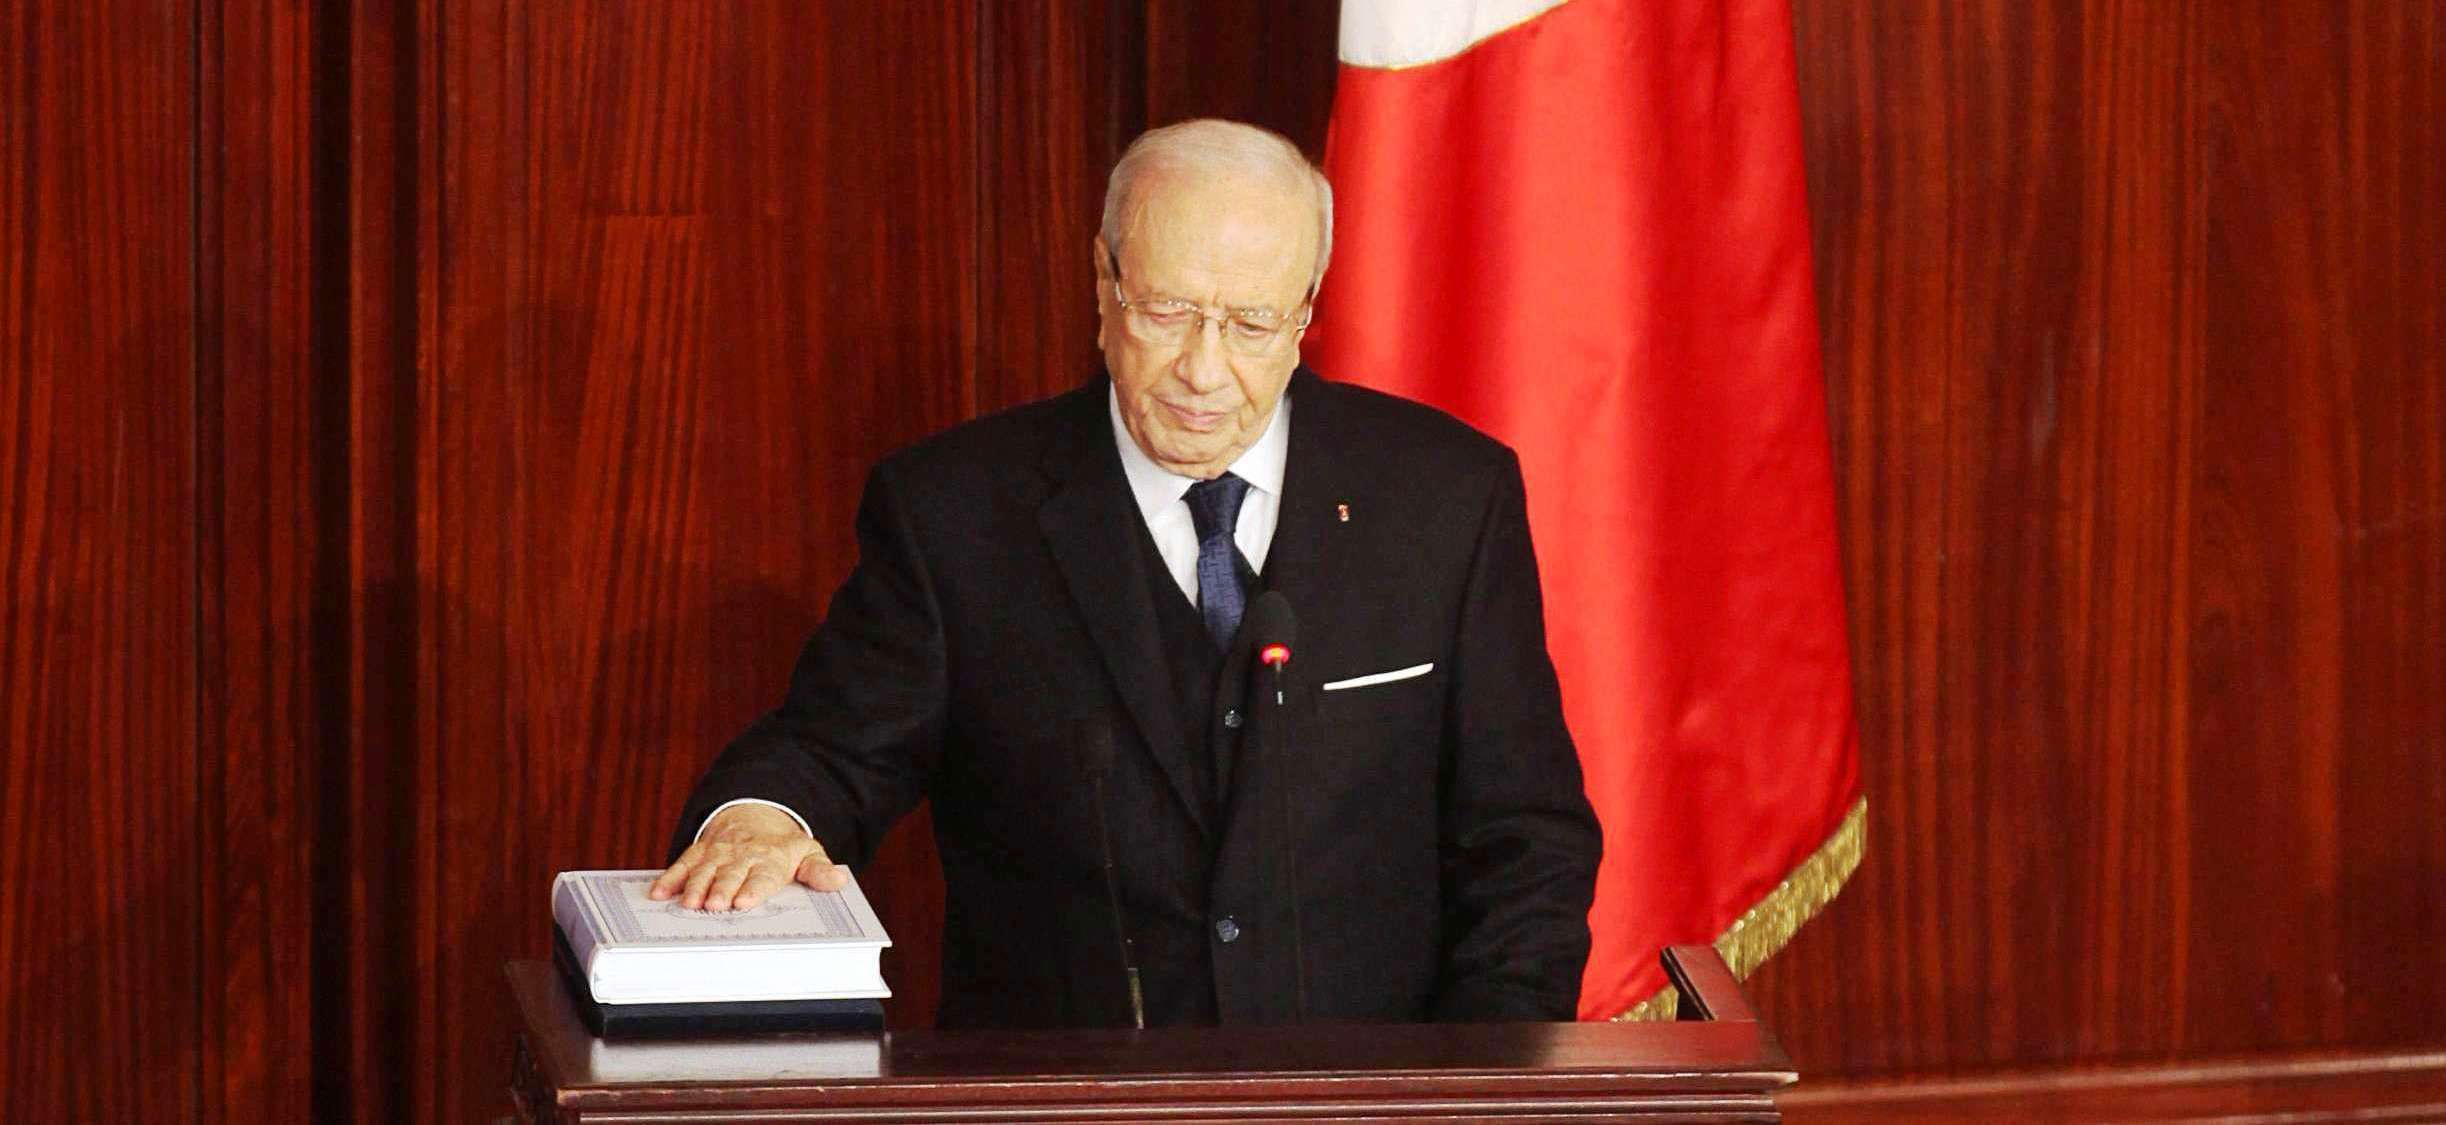 الرئيس التونسي الراحل نجح في كبح جموح النهضة للهيمنة على الحكم وأحدث توازنات سياسية في ظرف حساس